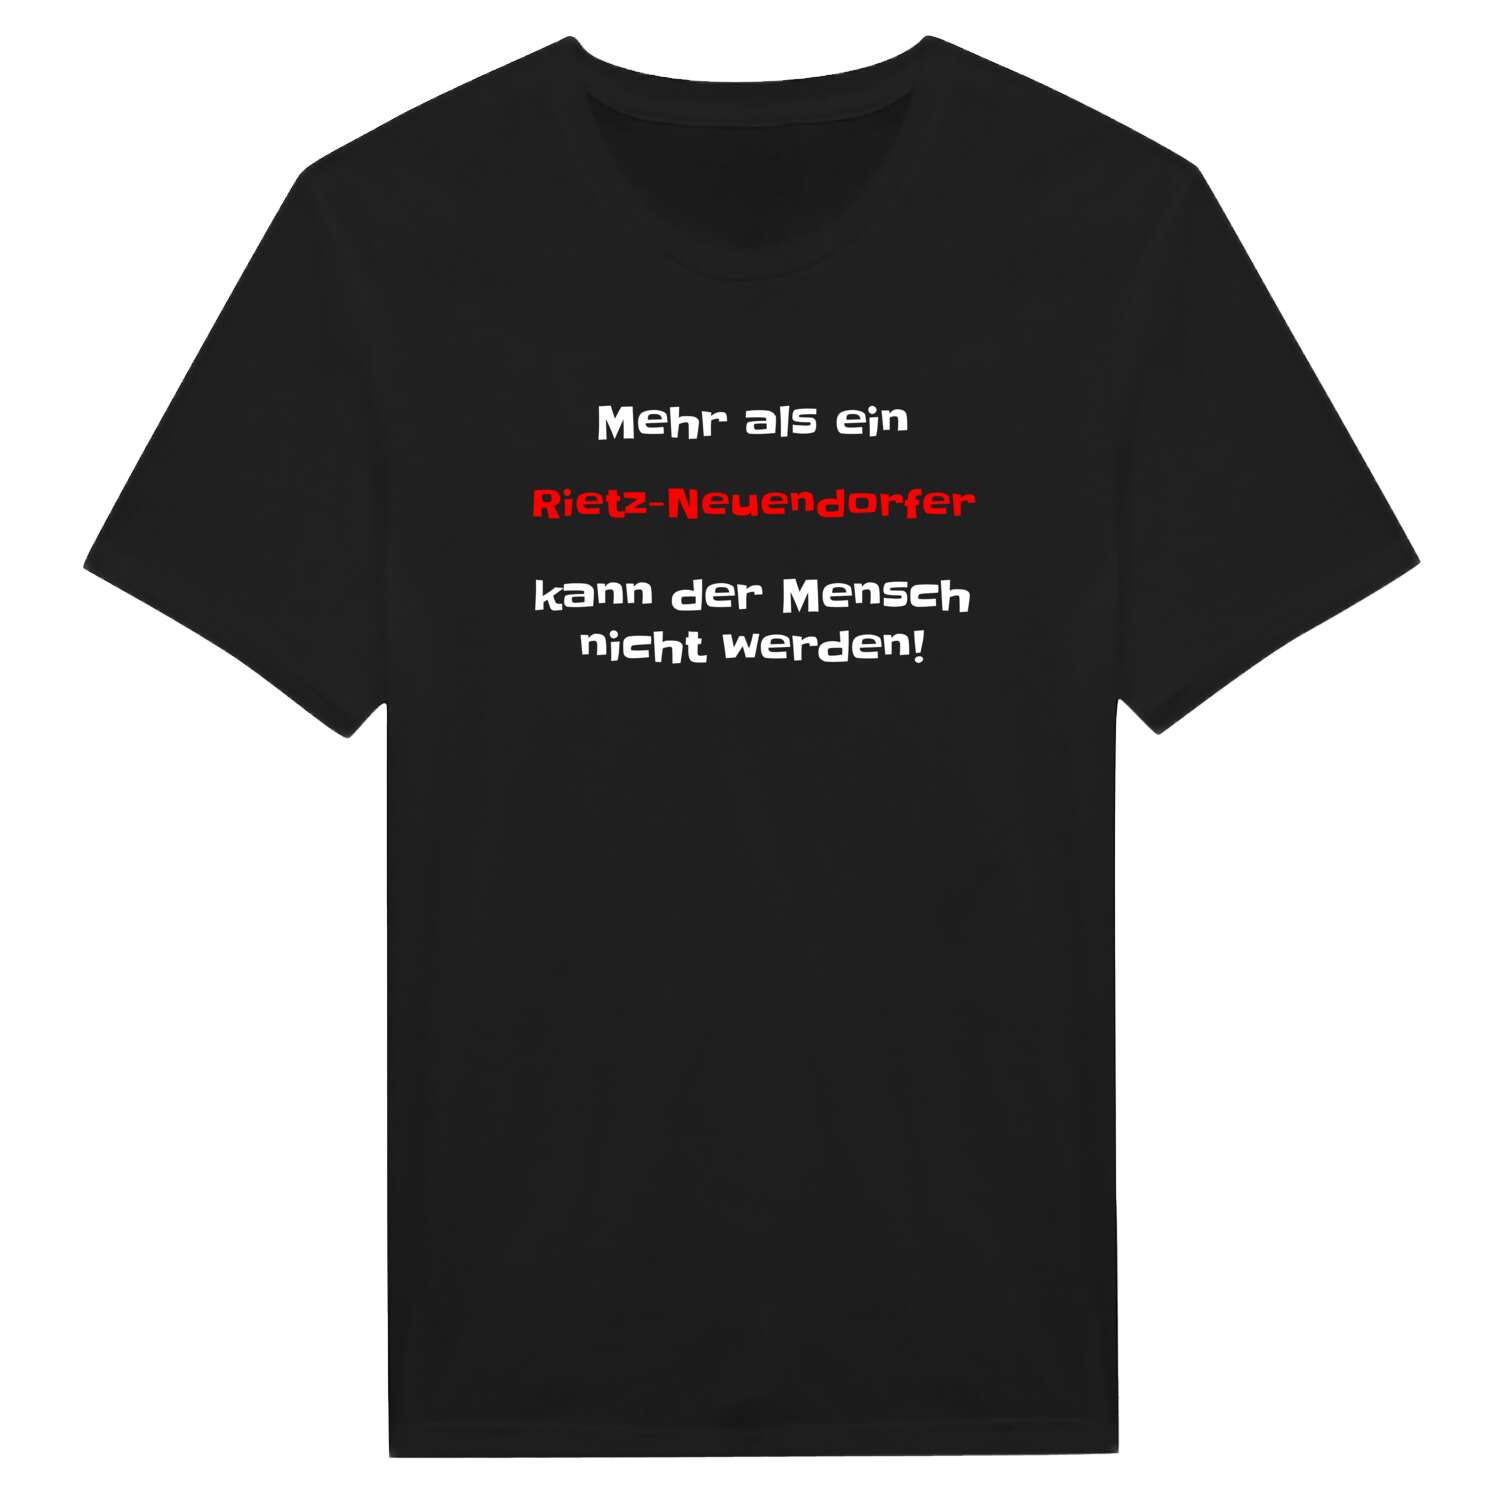 Rietz-Neuendorf T-Shirt »Mehr als ein«